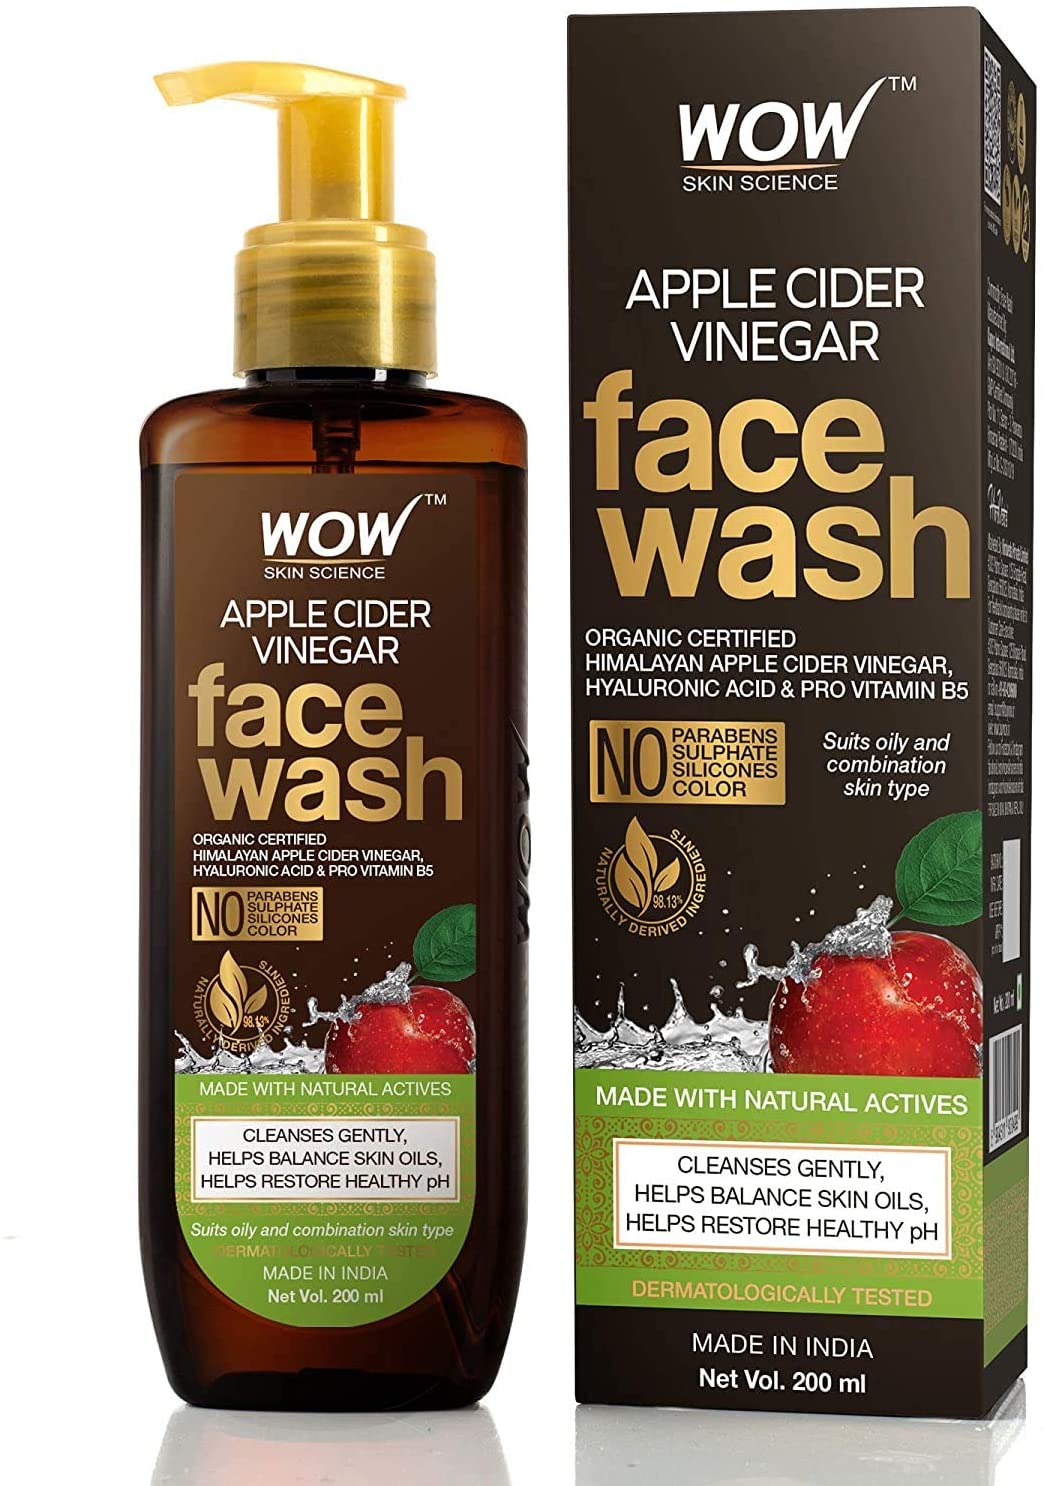 Nettoyant visage au vinaigre de cidre de pomme – Sans paraben, sulfate, silicone et couleur (200 ml) 